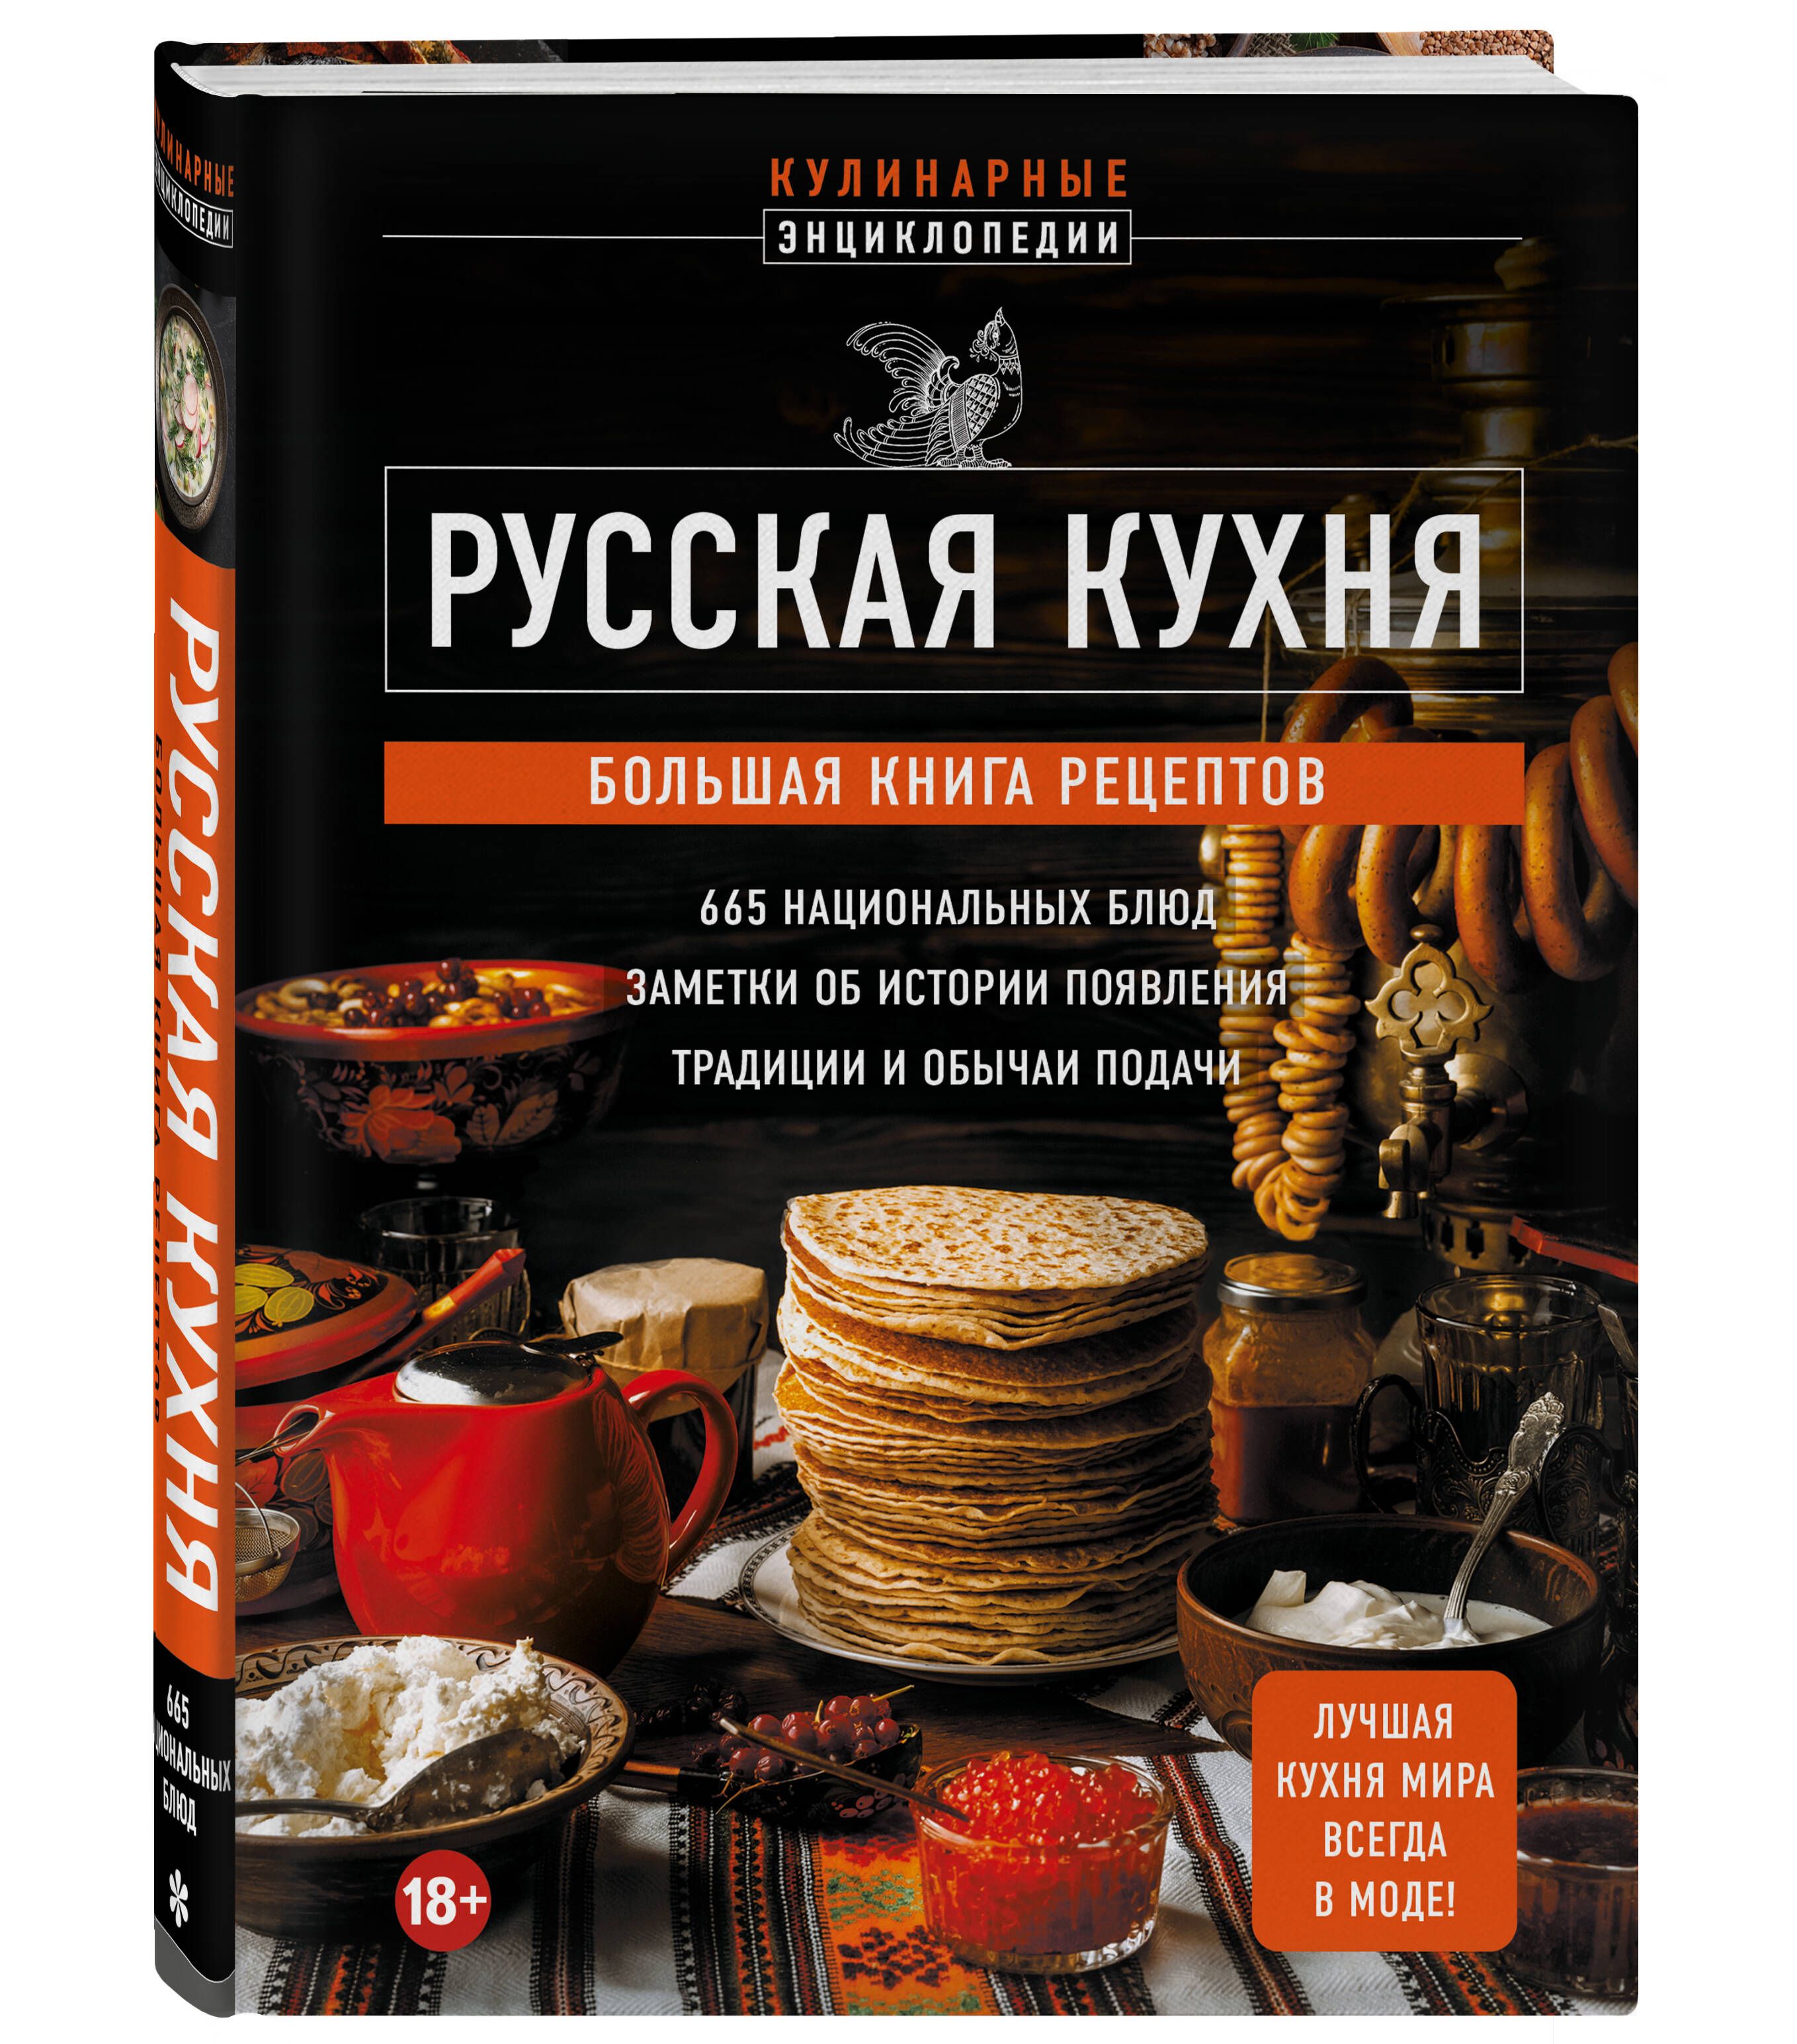 Русская кухня: лучшие рецепты, которые вы полюбите